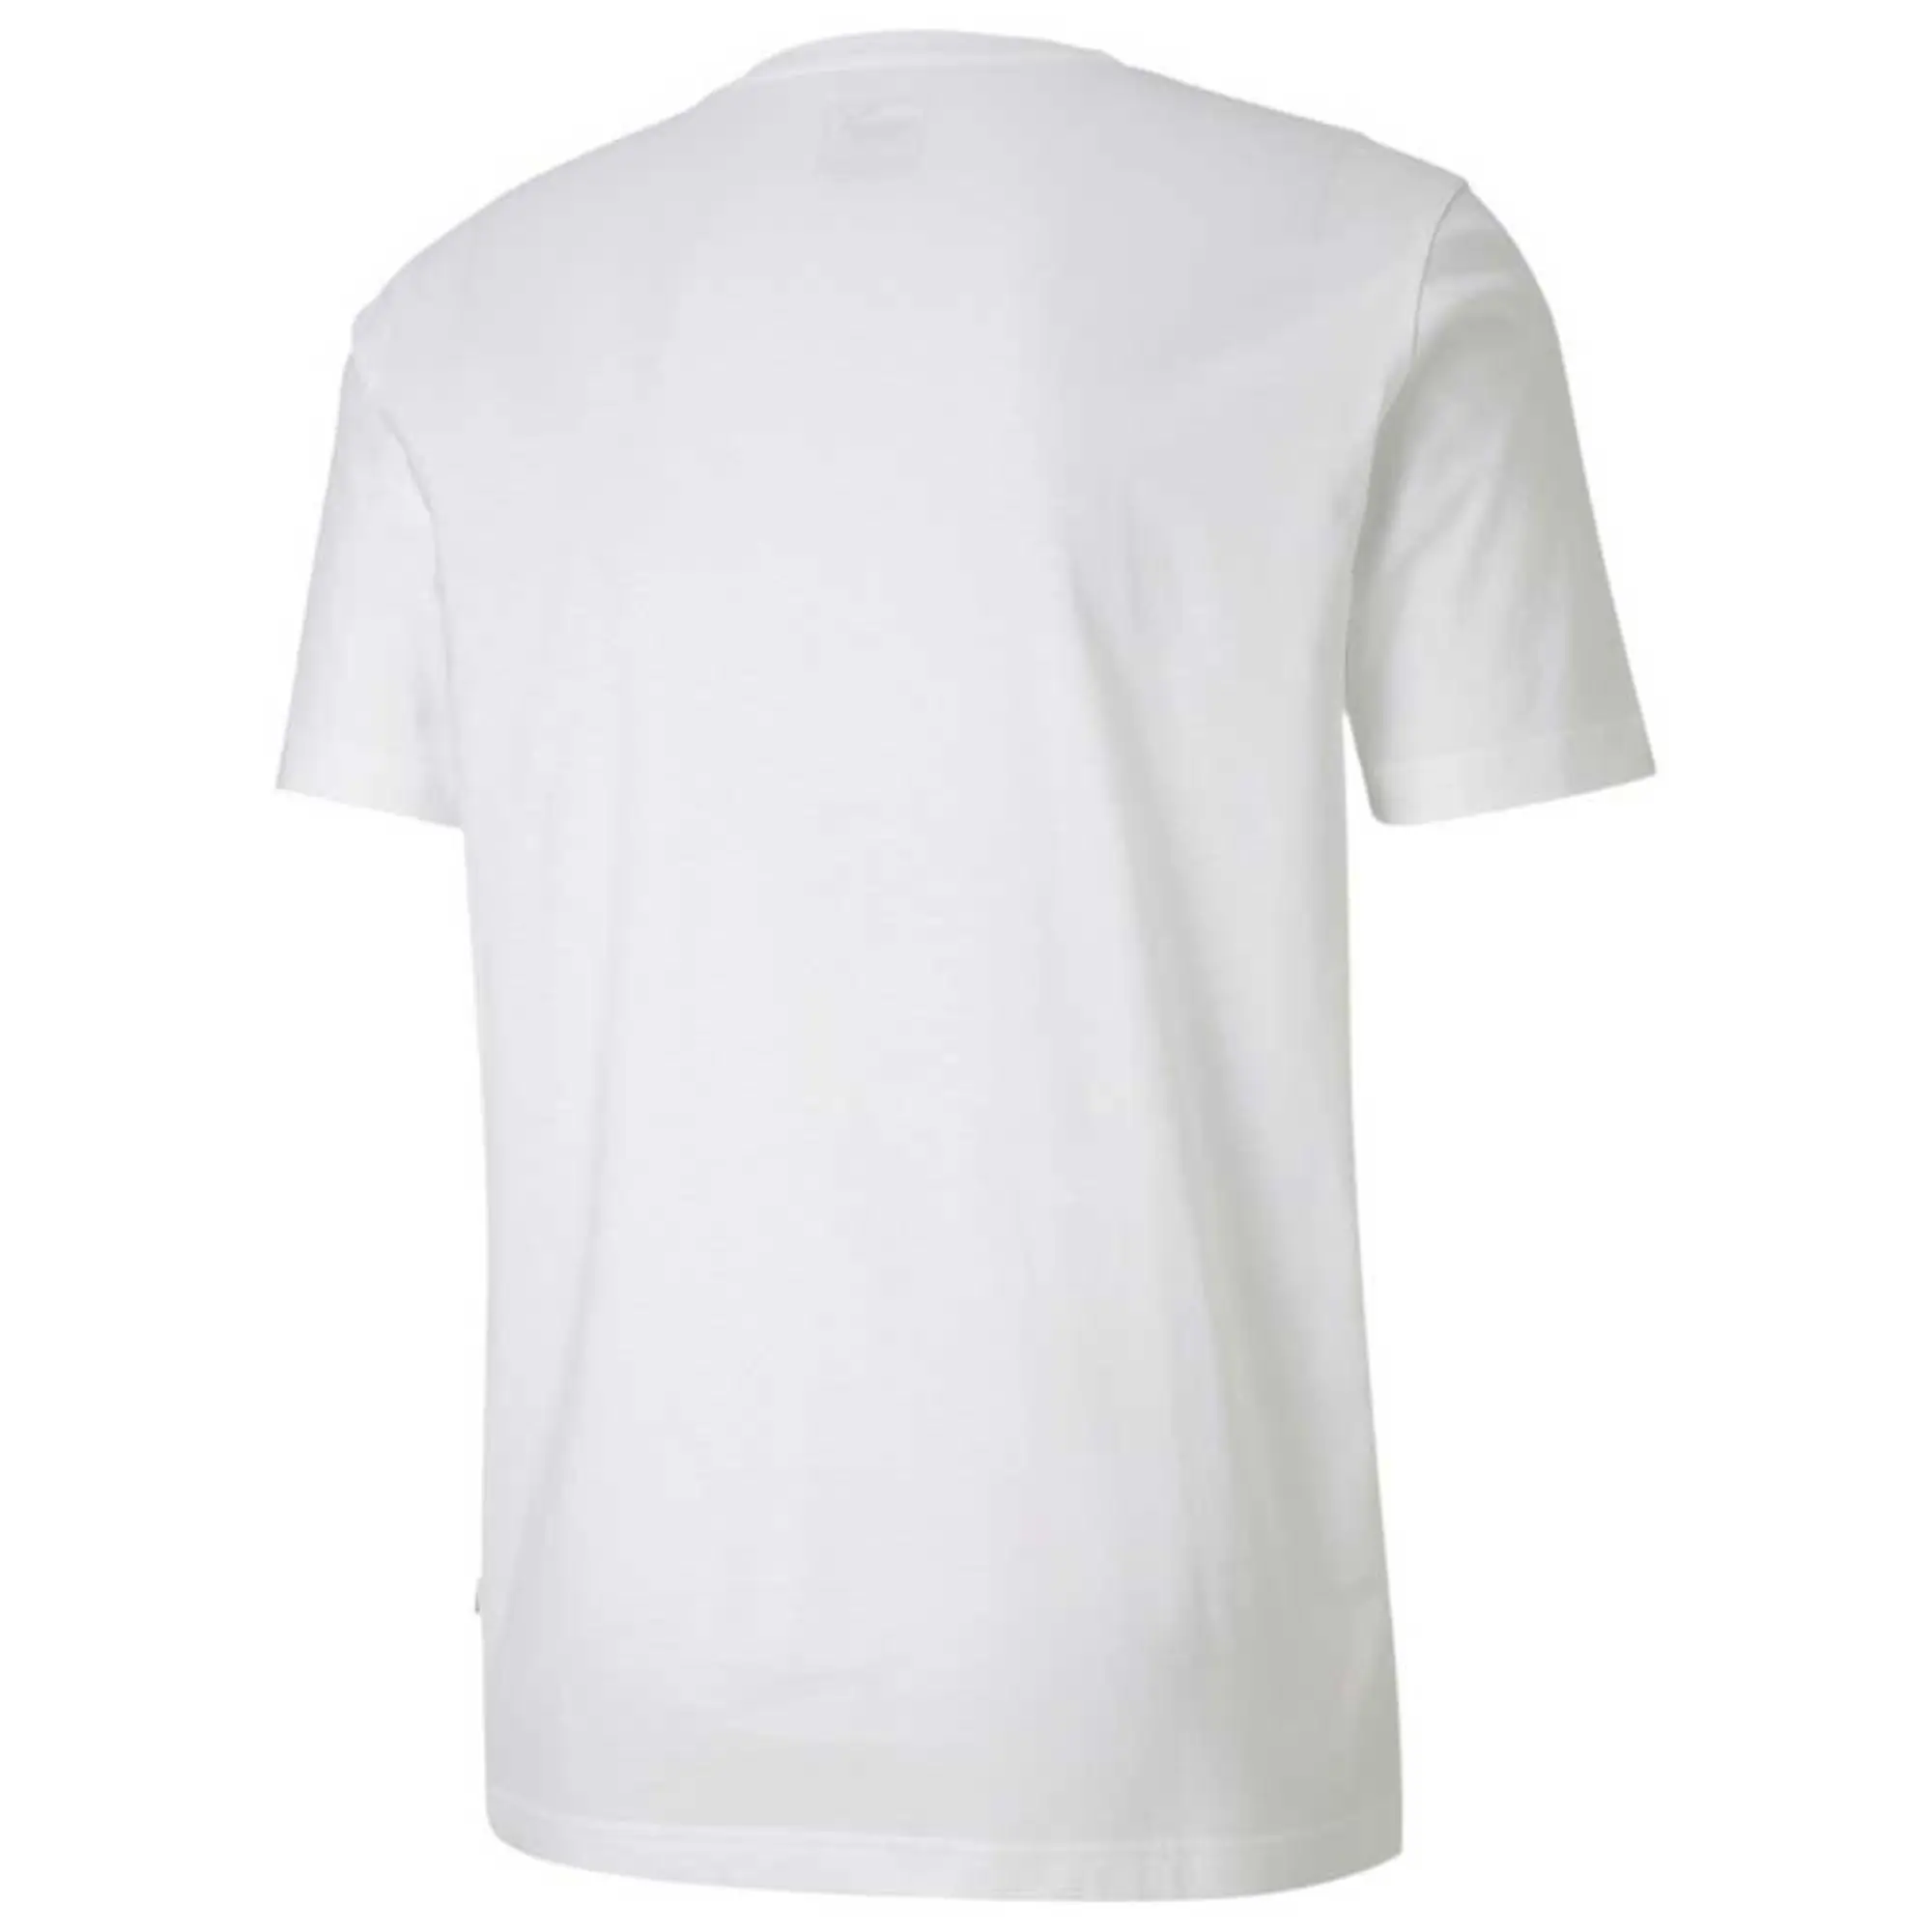 Puma Photo Short Sleeve T-shirt  - White